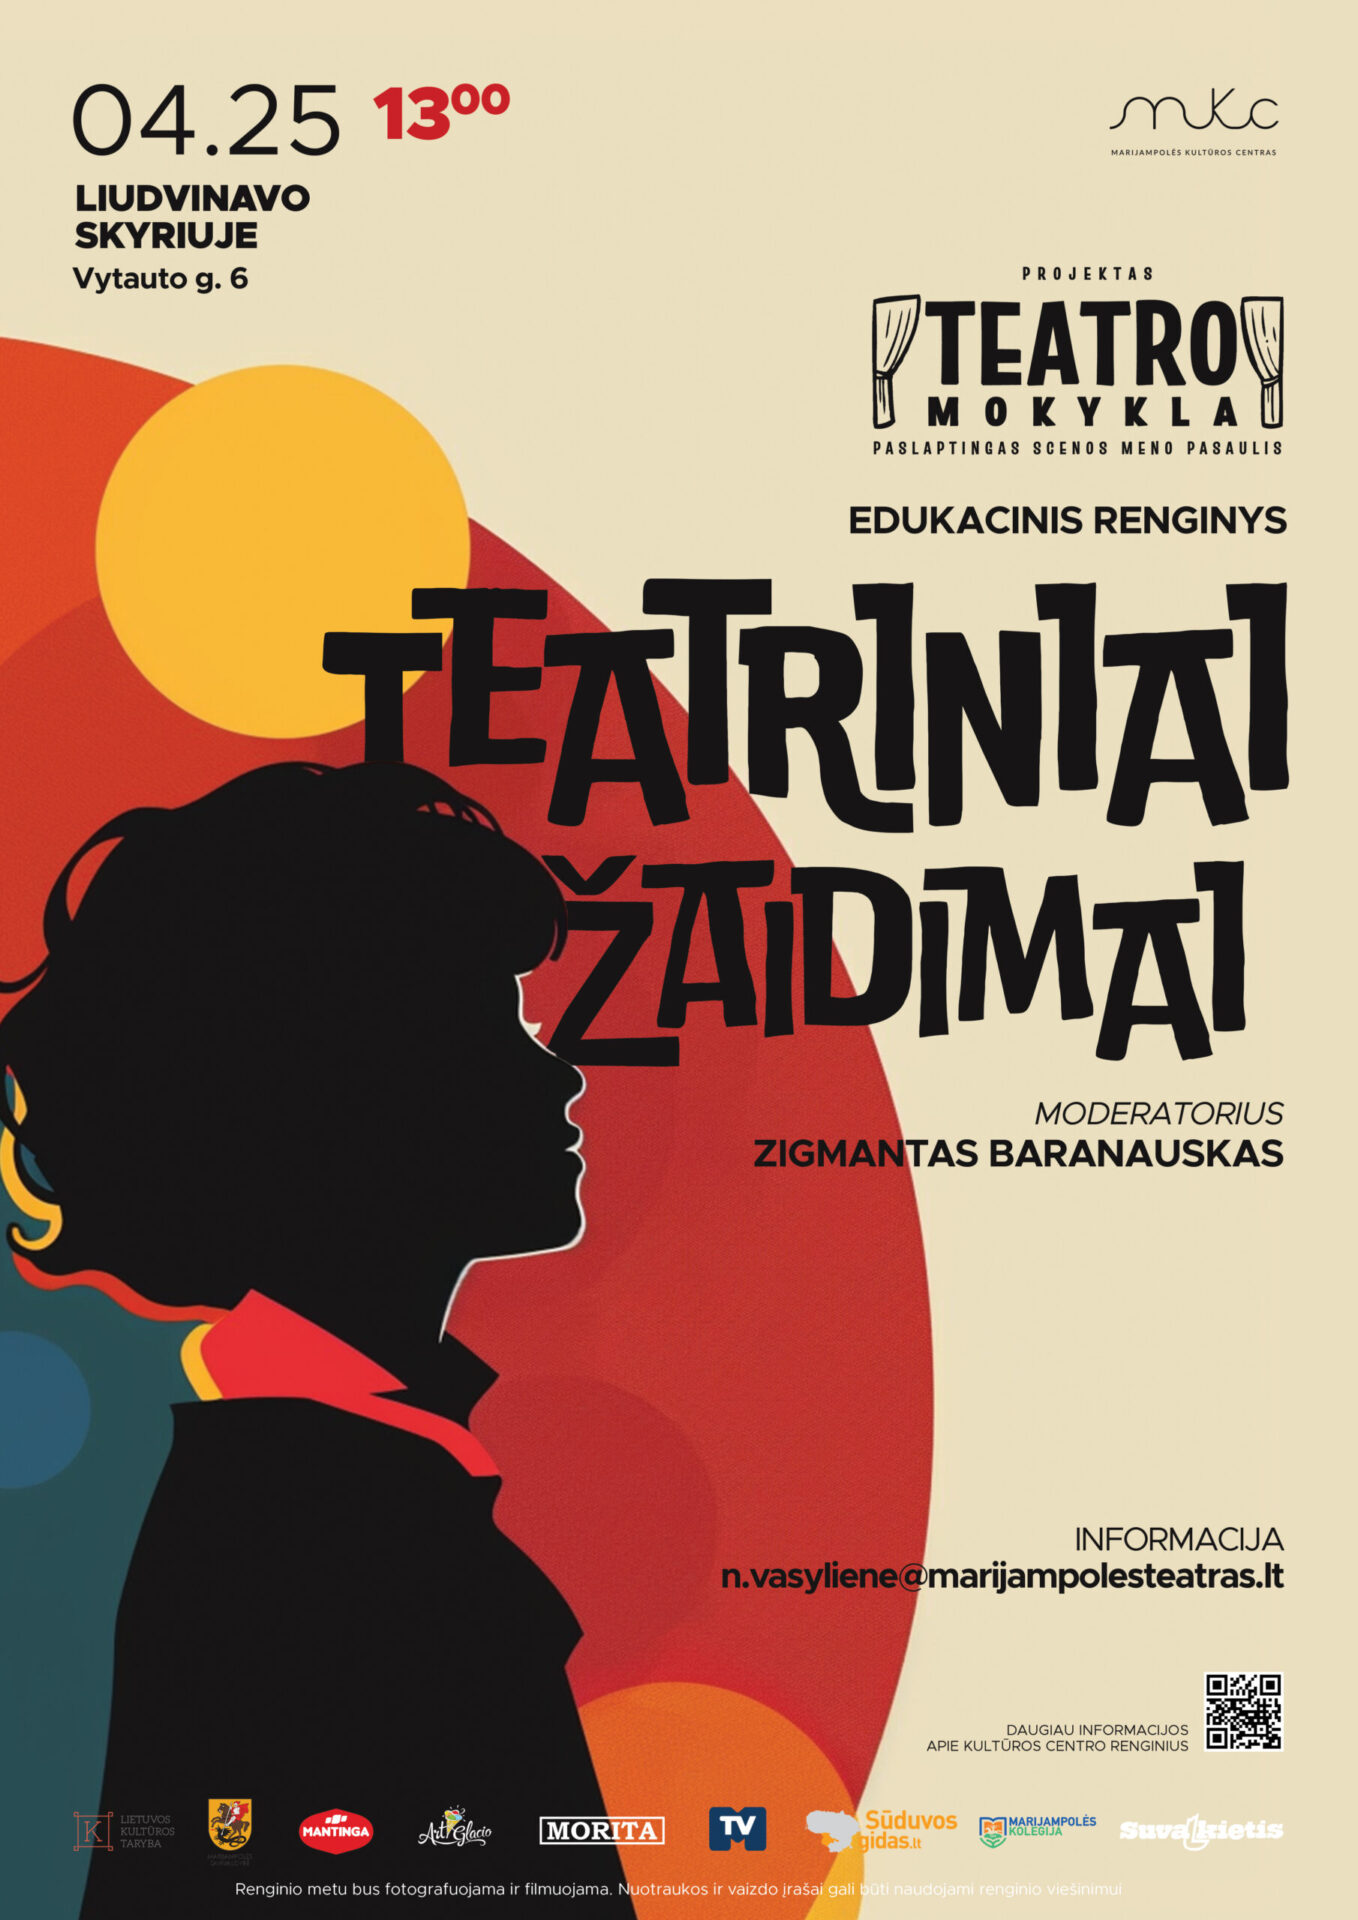 Edukacinis renginys „Teatriniai žaidimai” su Zigmantu Baranausku | LIUDVINAVAS